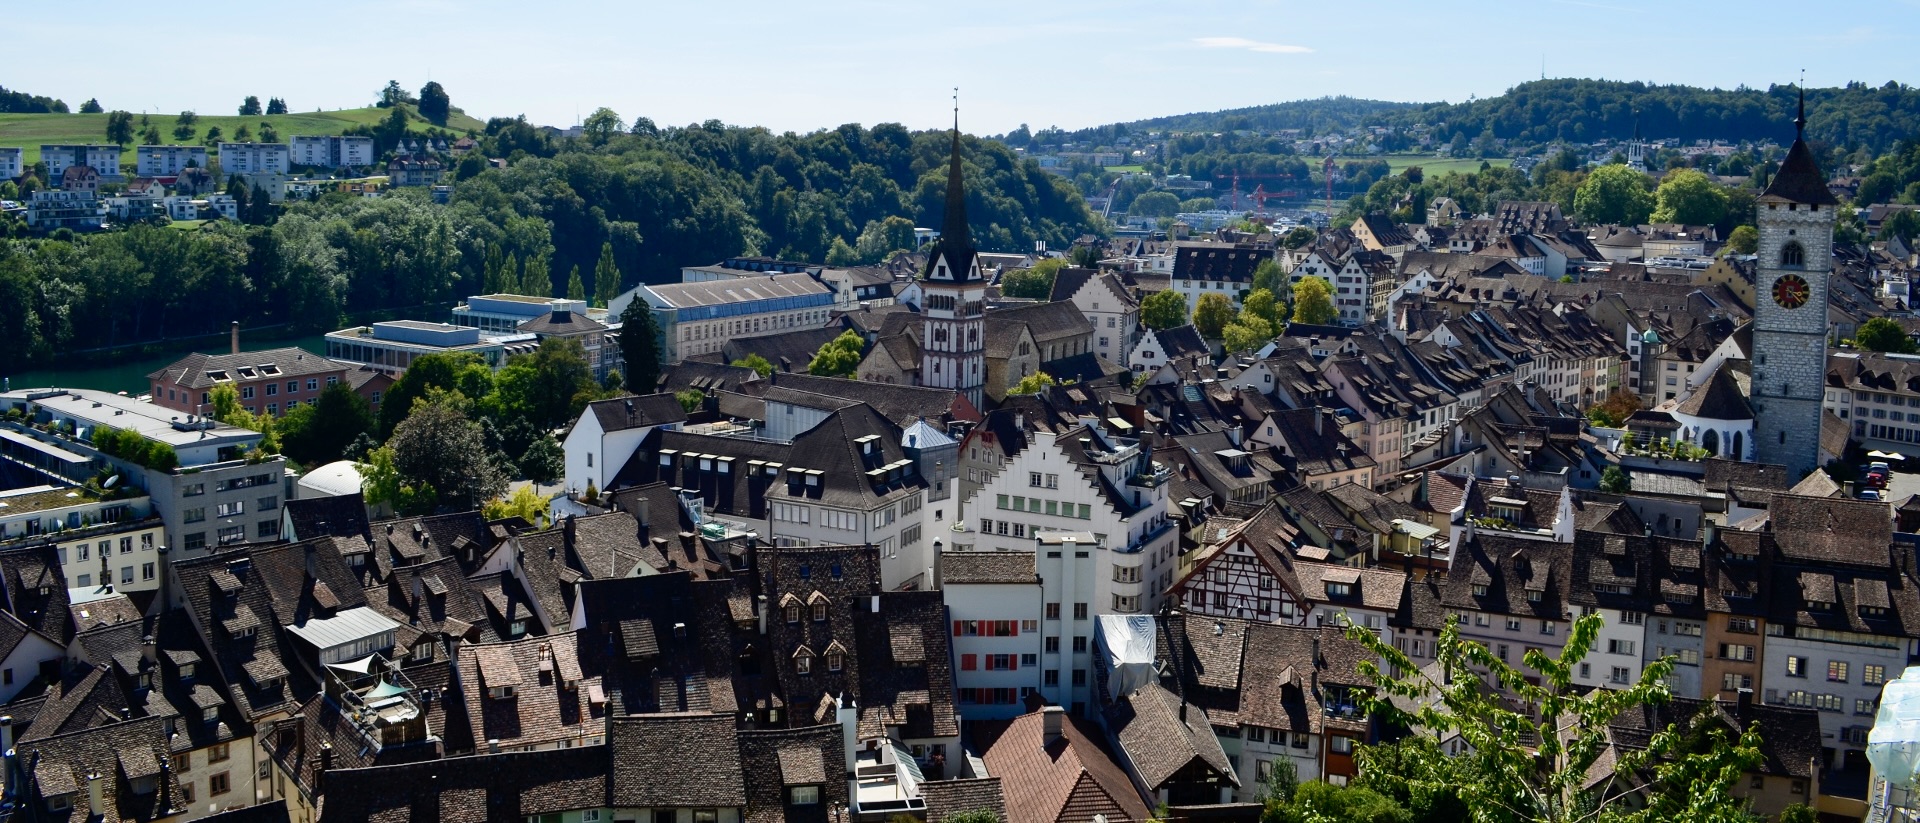 La ville de Schaffhouse s'étend sur les rives du Rhin |  © Regula Pfeifer kath.ch